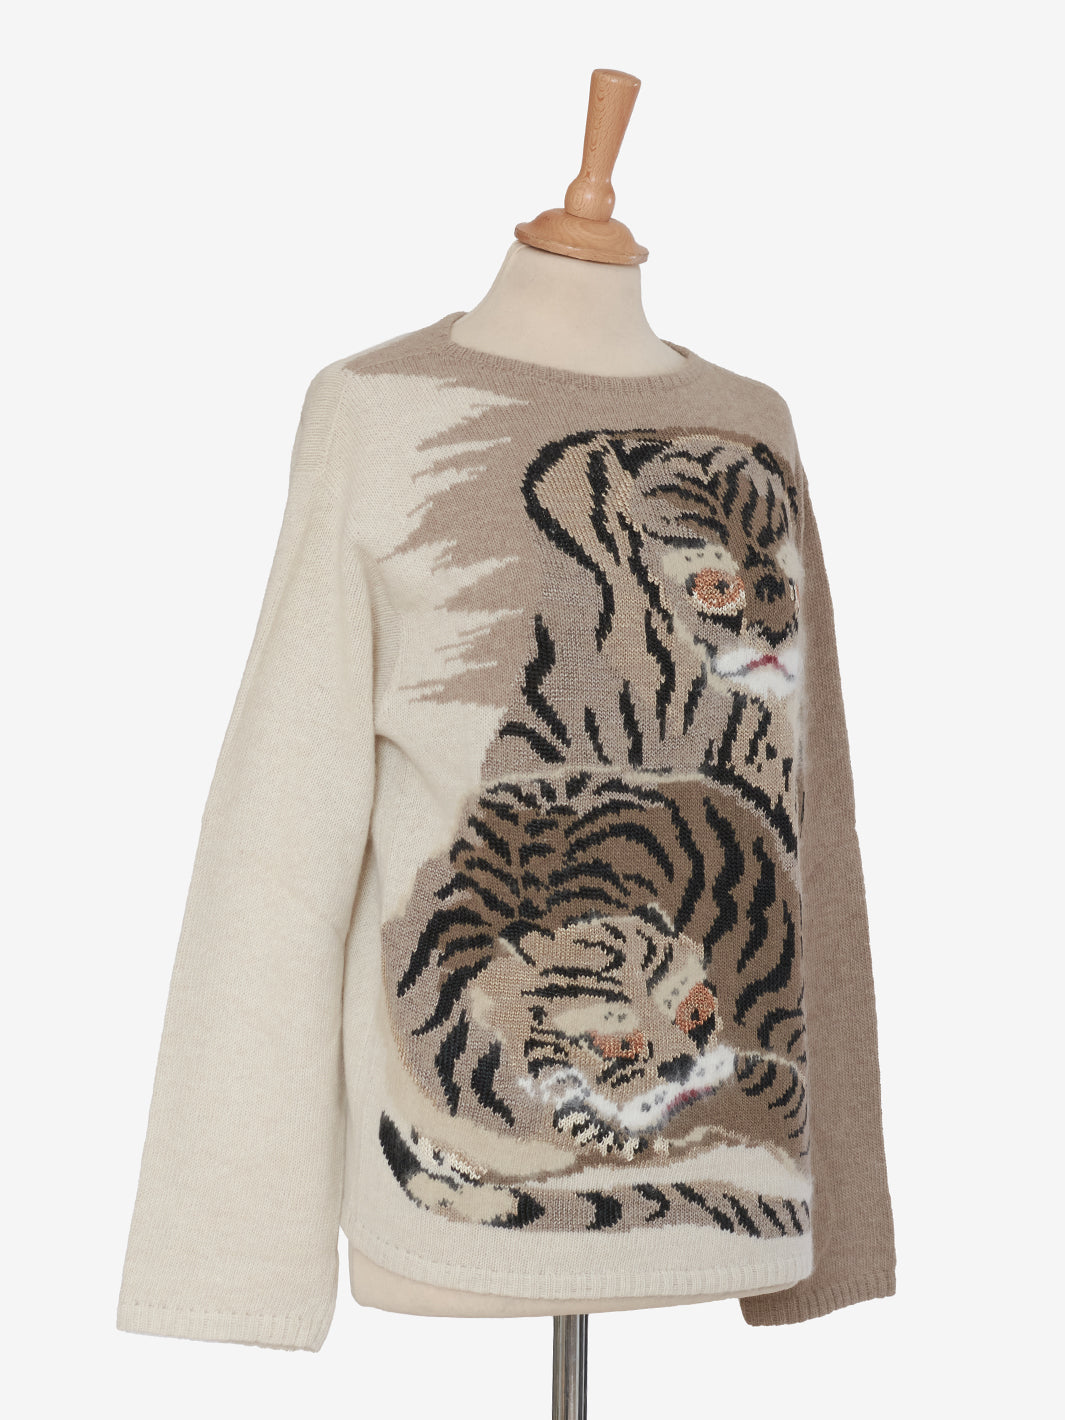 Krizia Hyena Embroidery Sweater